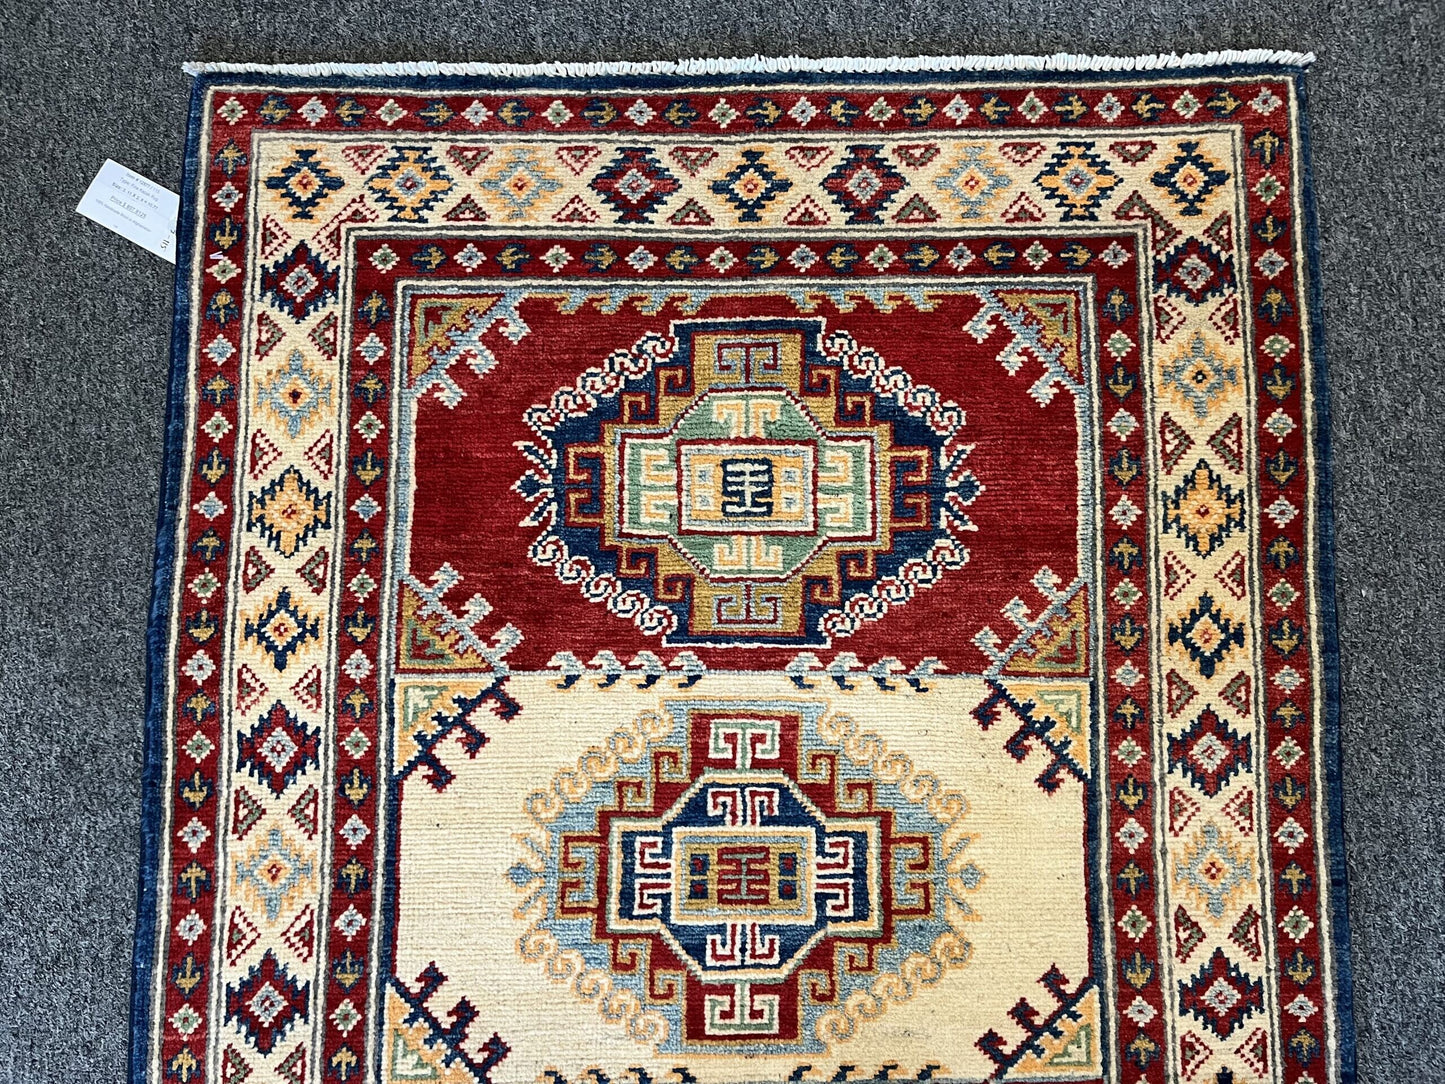 3' X 4' Fine Kazak Handmade Wool Rug # 12577